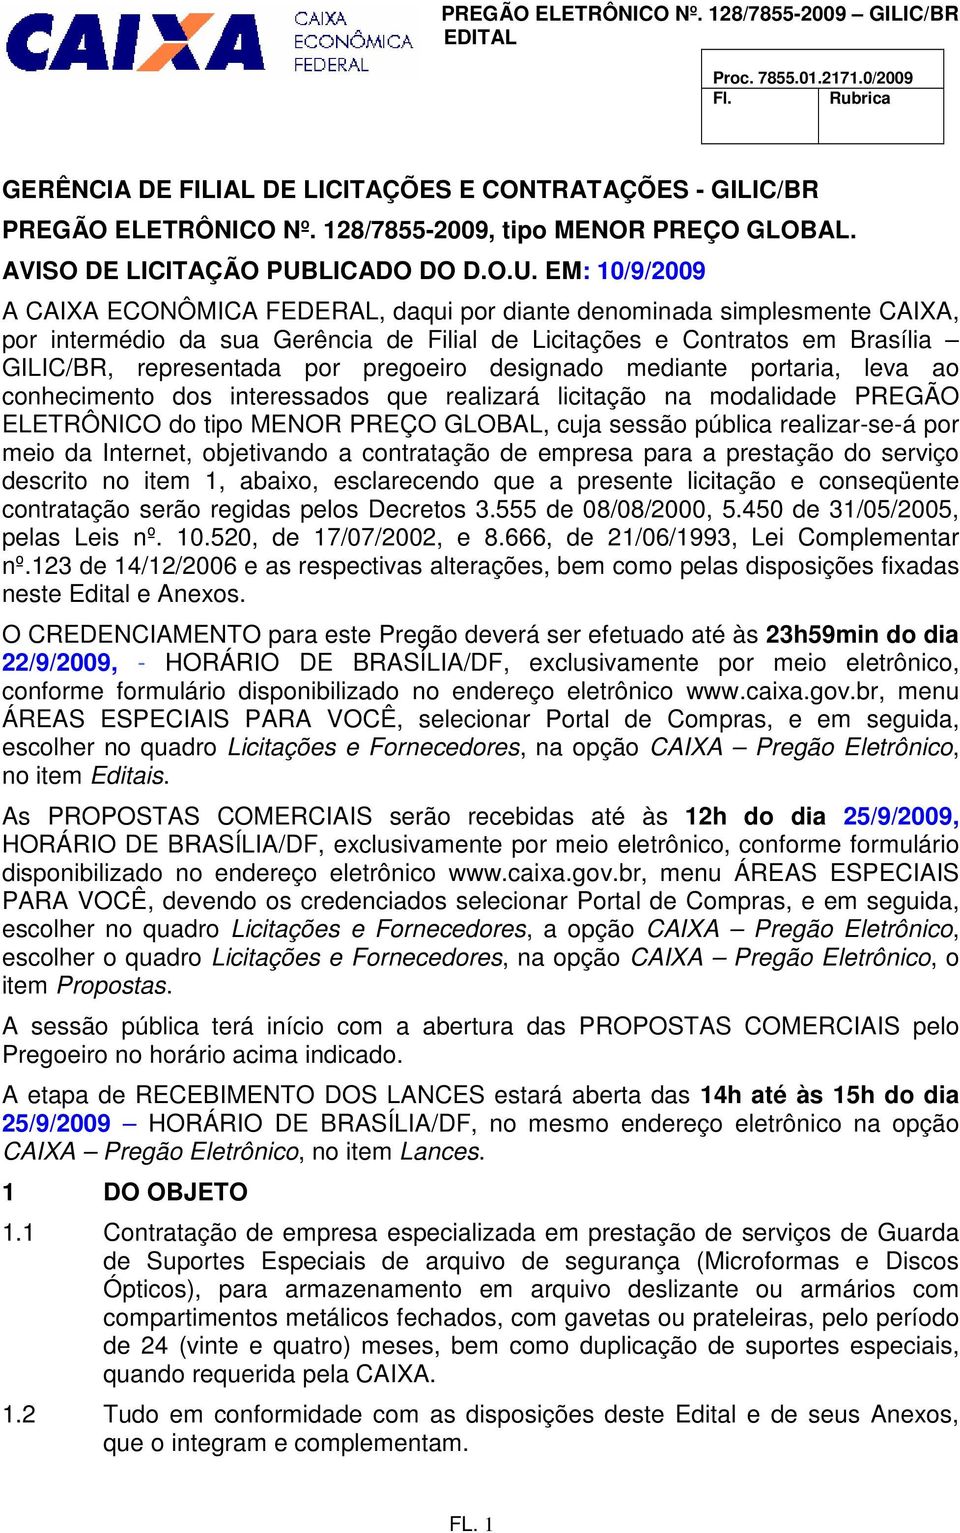 EM: 10/9/2009 A CAIXA ECONÔMICA FEDERAL, daqui por diante denominada simplesmente CAIXA, por intermédio da sua Gerência de Filial de Licitações e Contratos em Brasília GILIC/BR, representada por